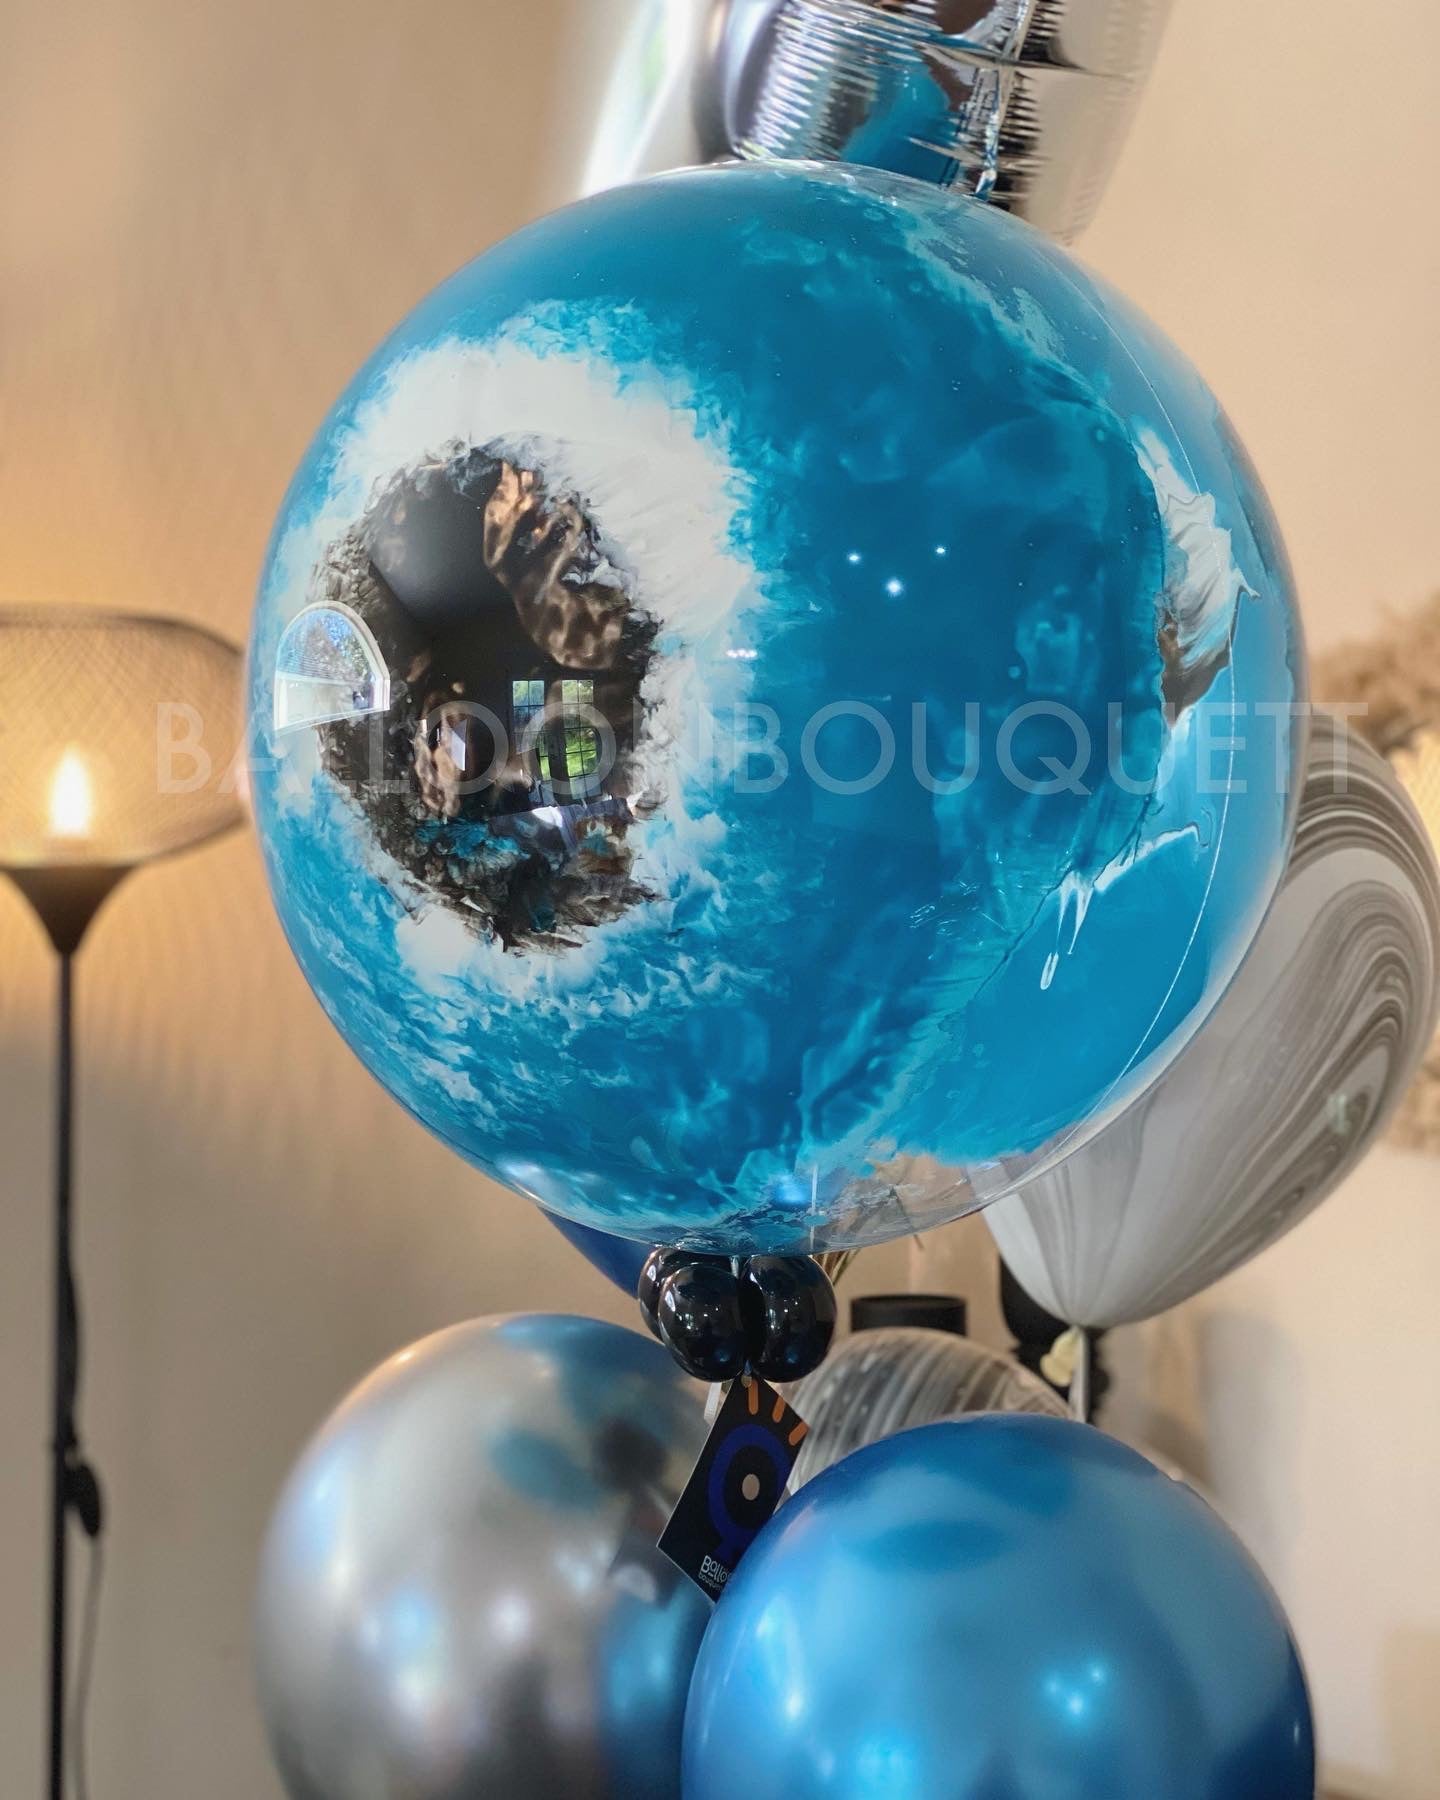 Bubble Painted Balloon